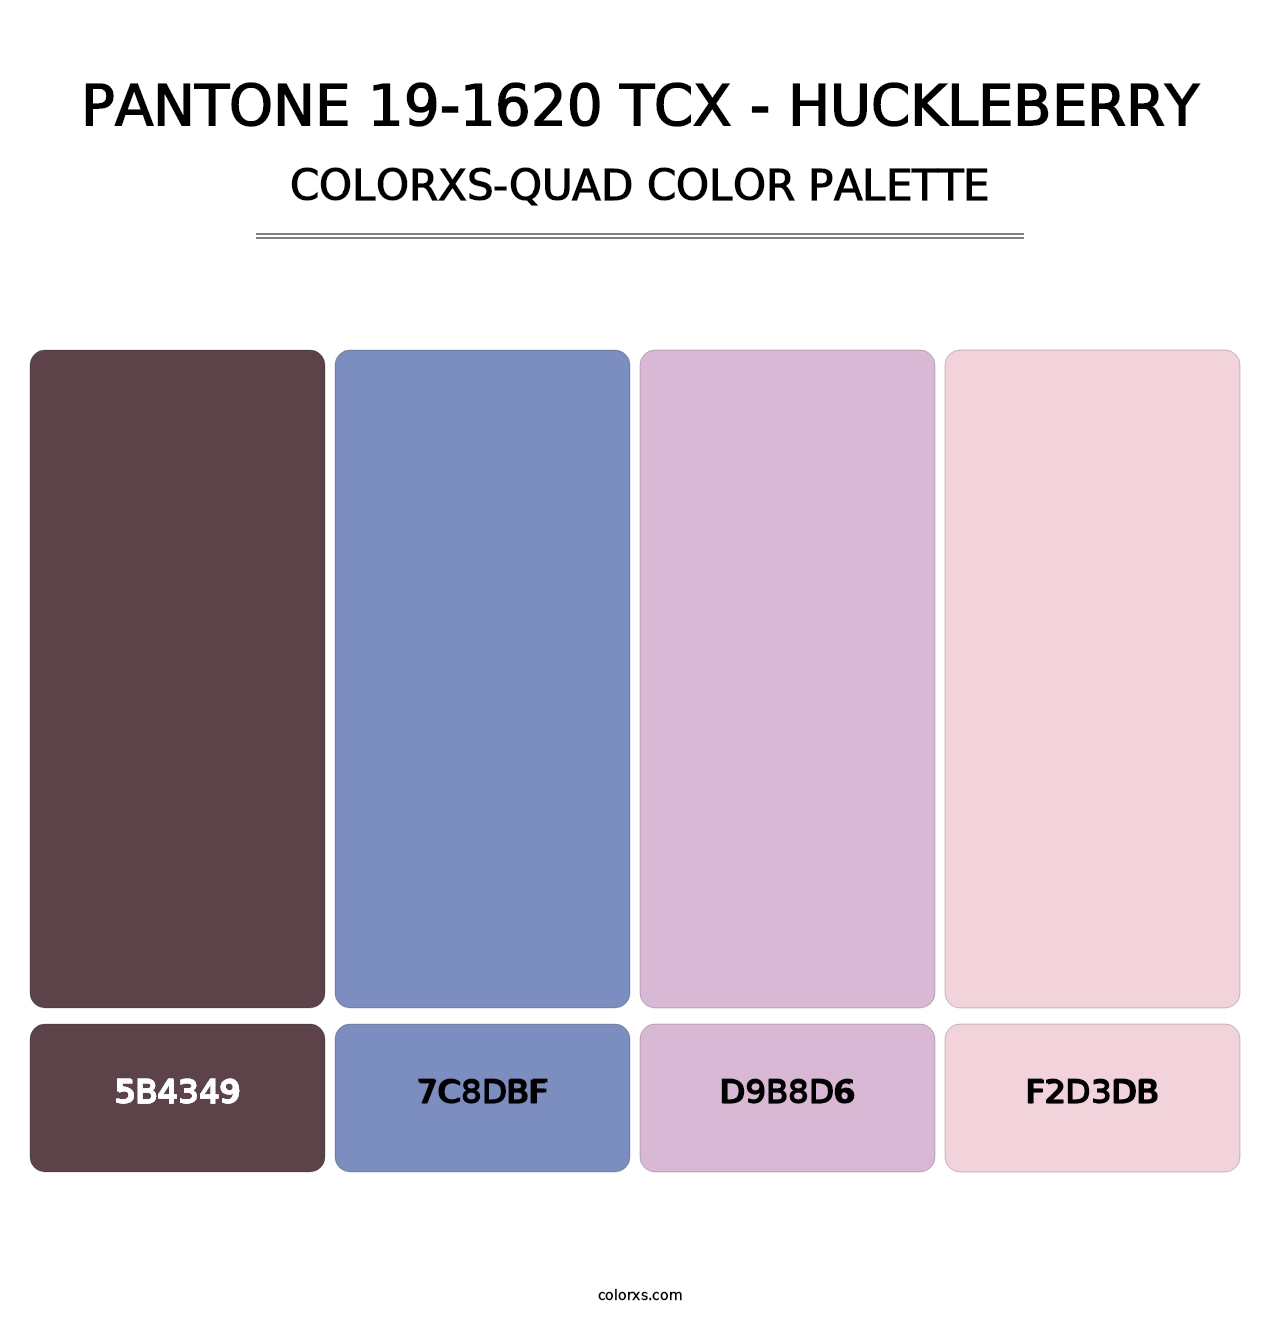 PANTONE 19-1620 TCX - Huckleberry - Colorxs Quad Palette